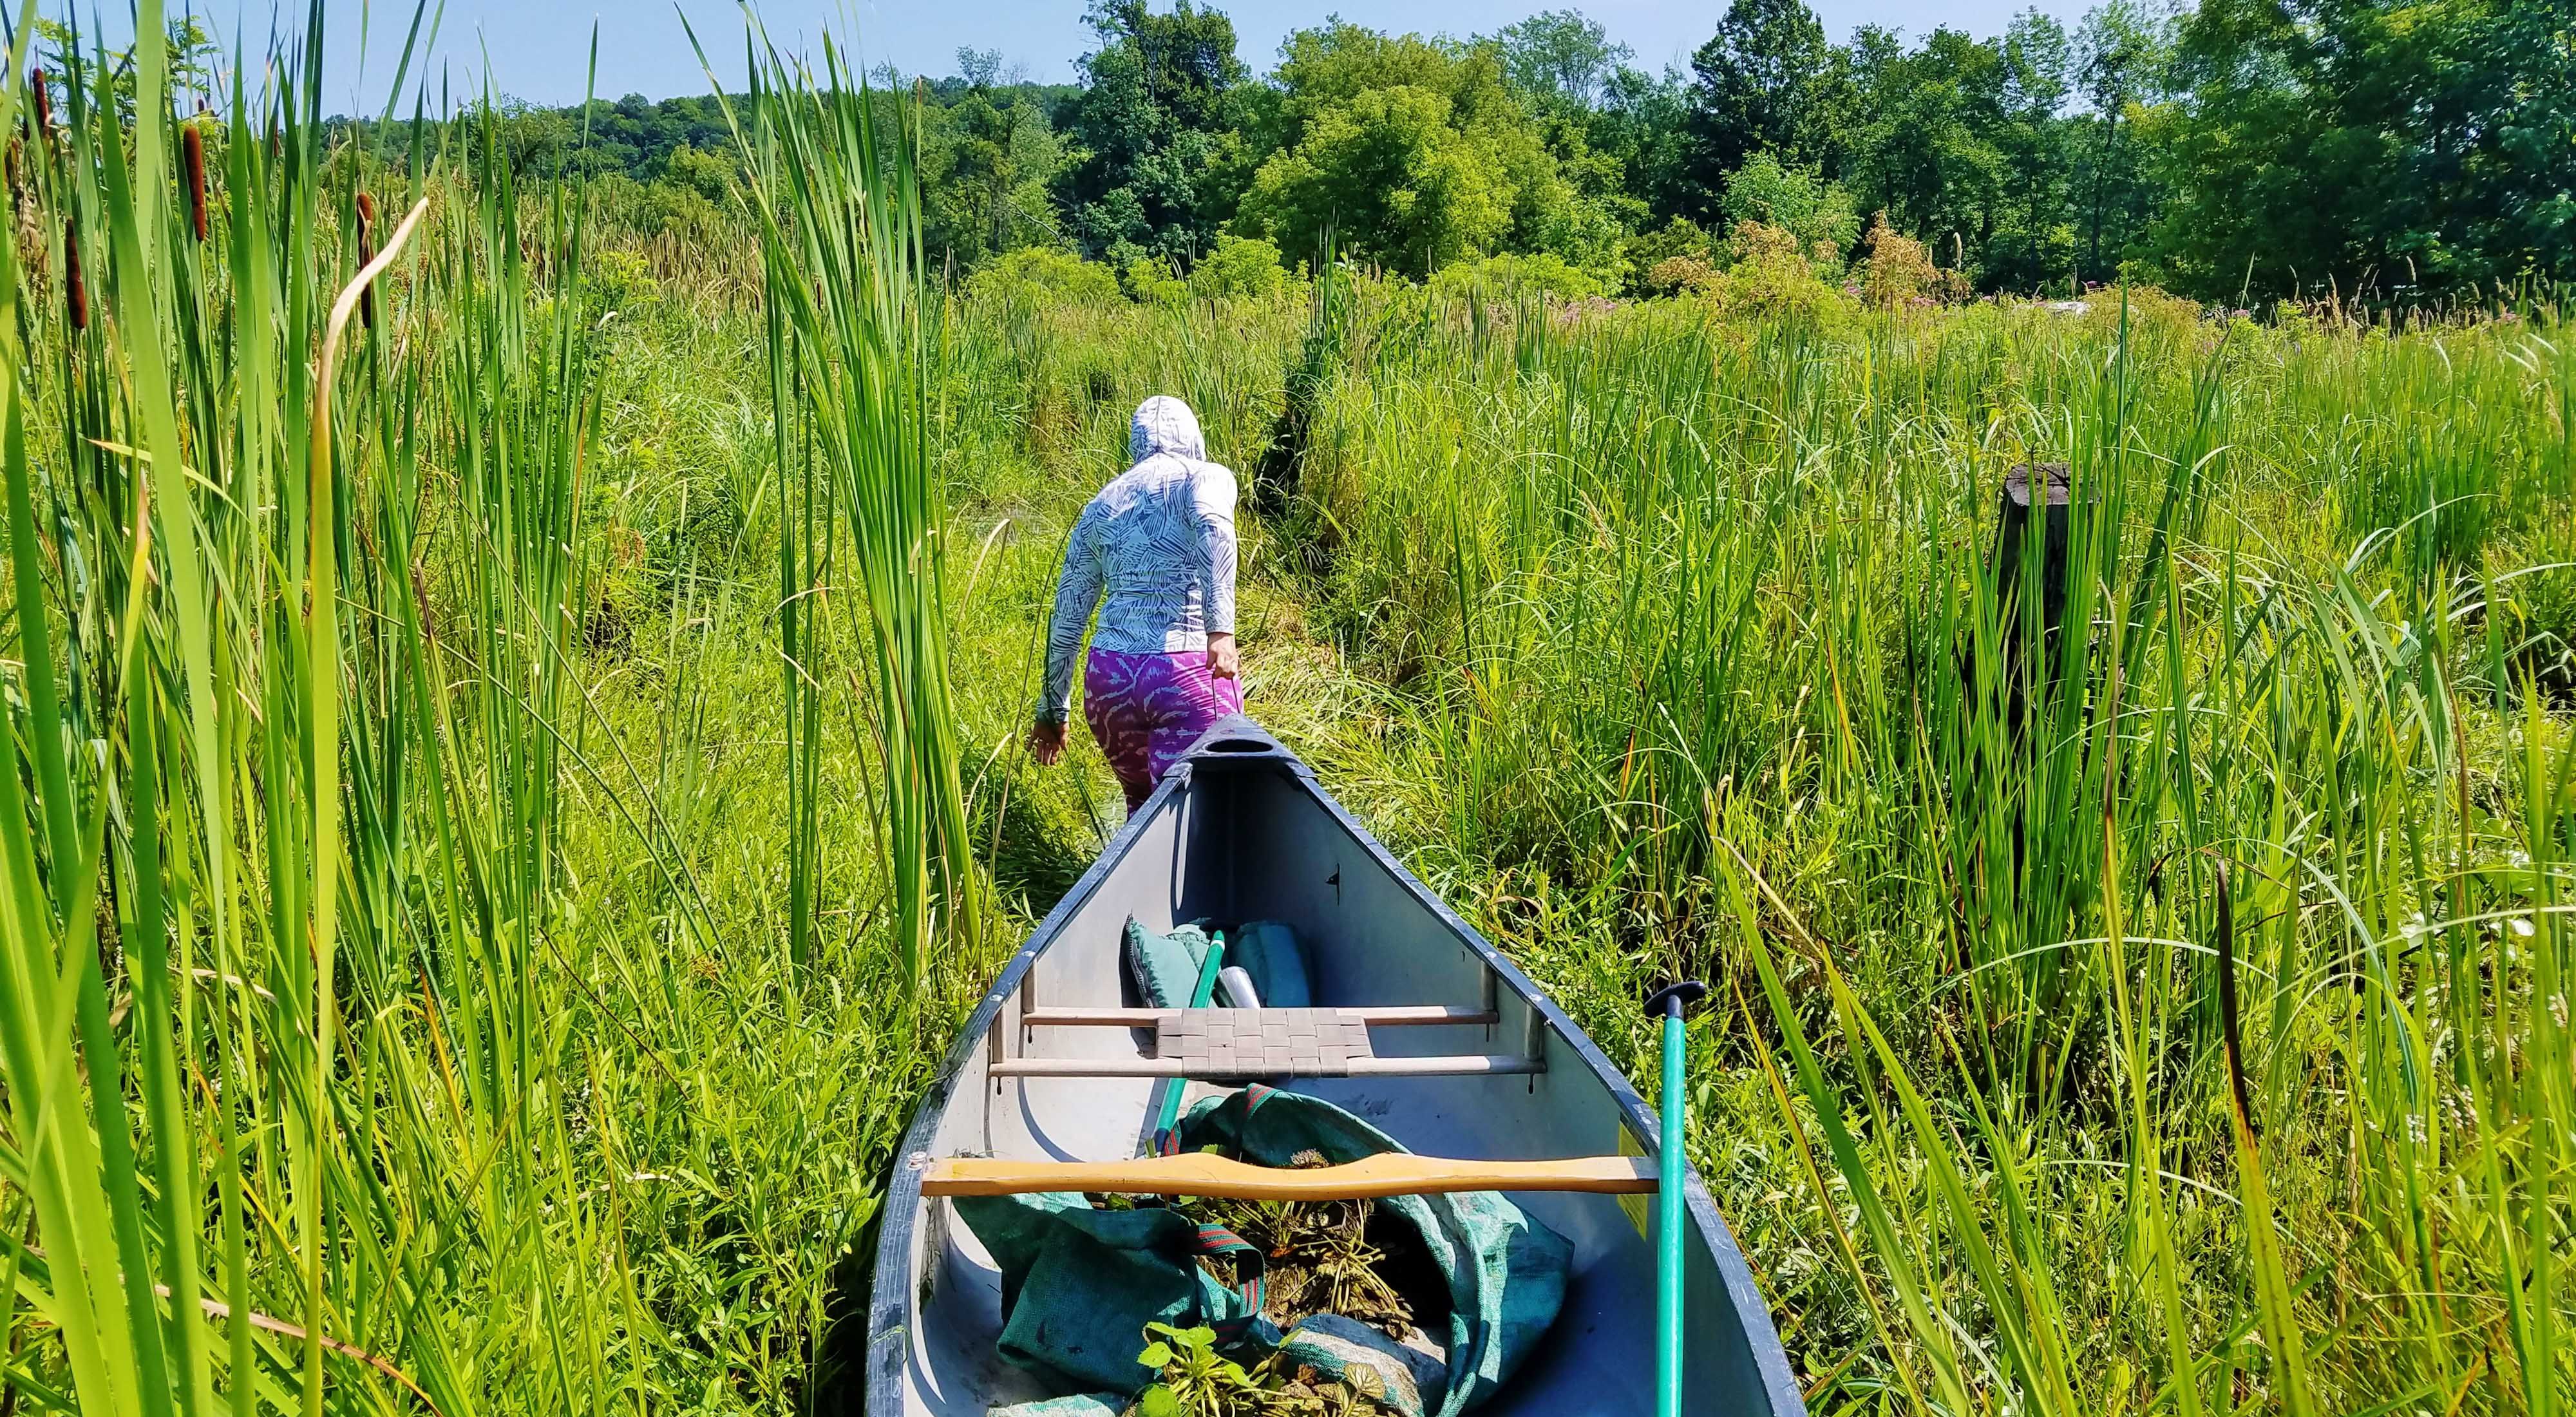 Woman carries a canoe through tall green grass.